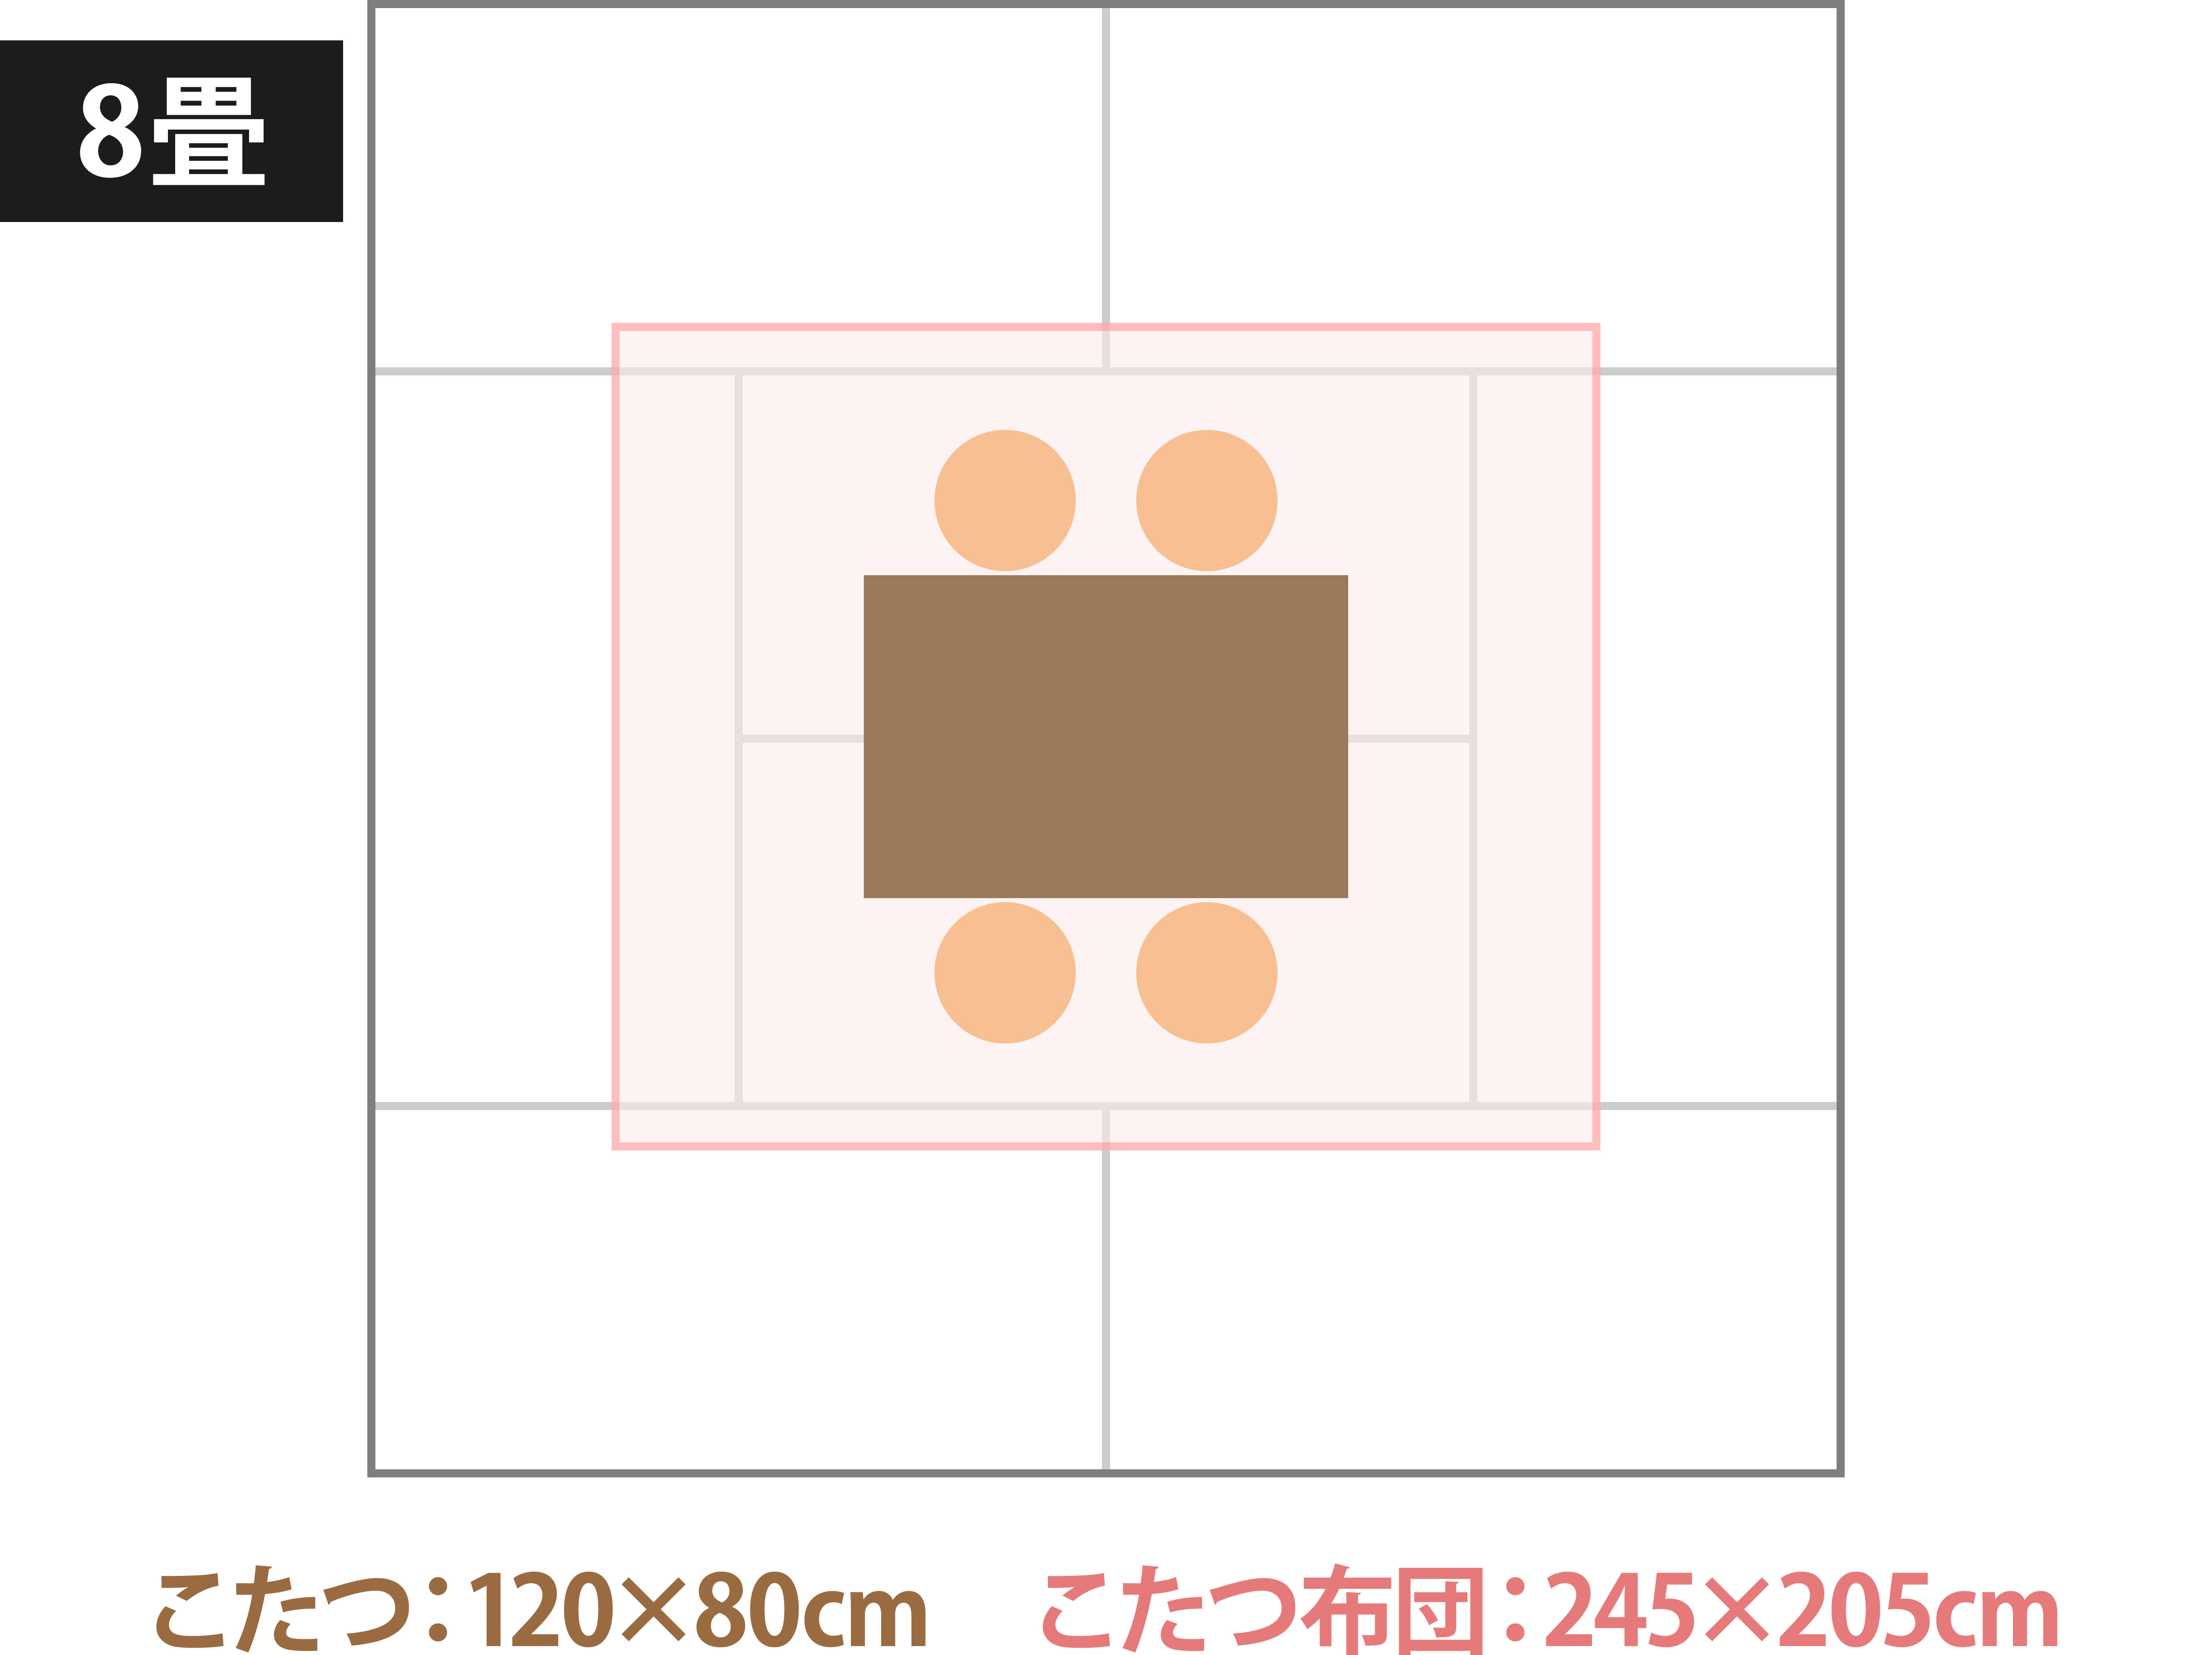 120×80cmの長方形のこたつの場合